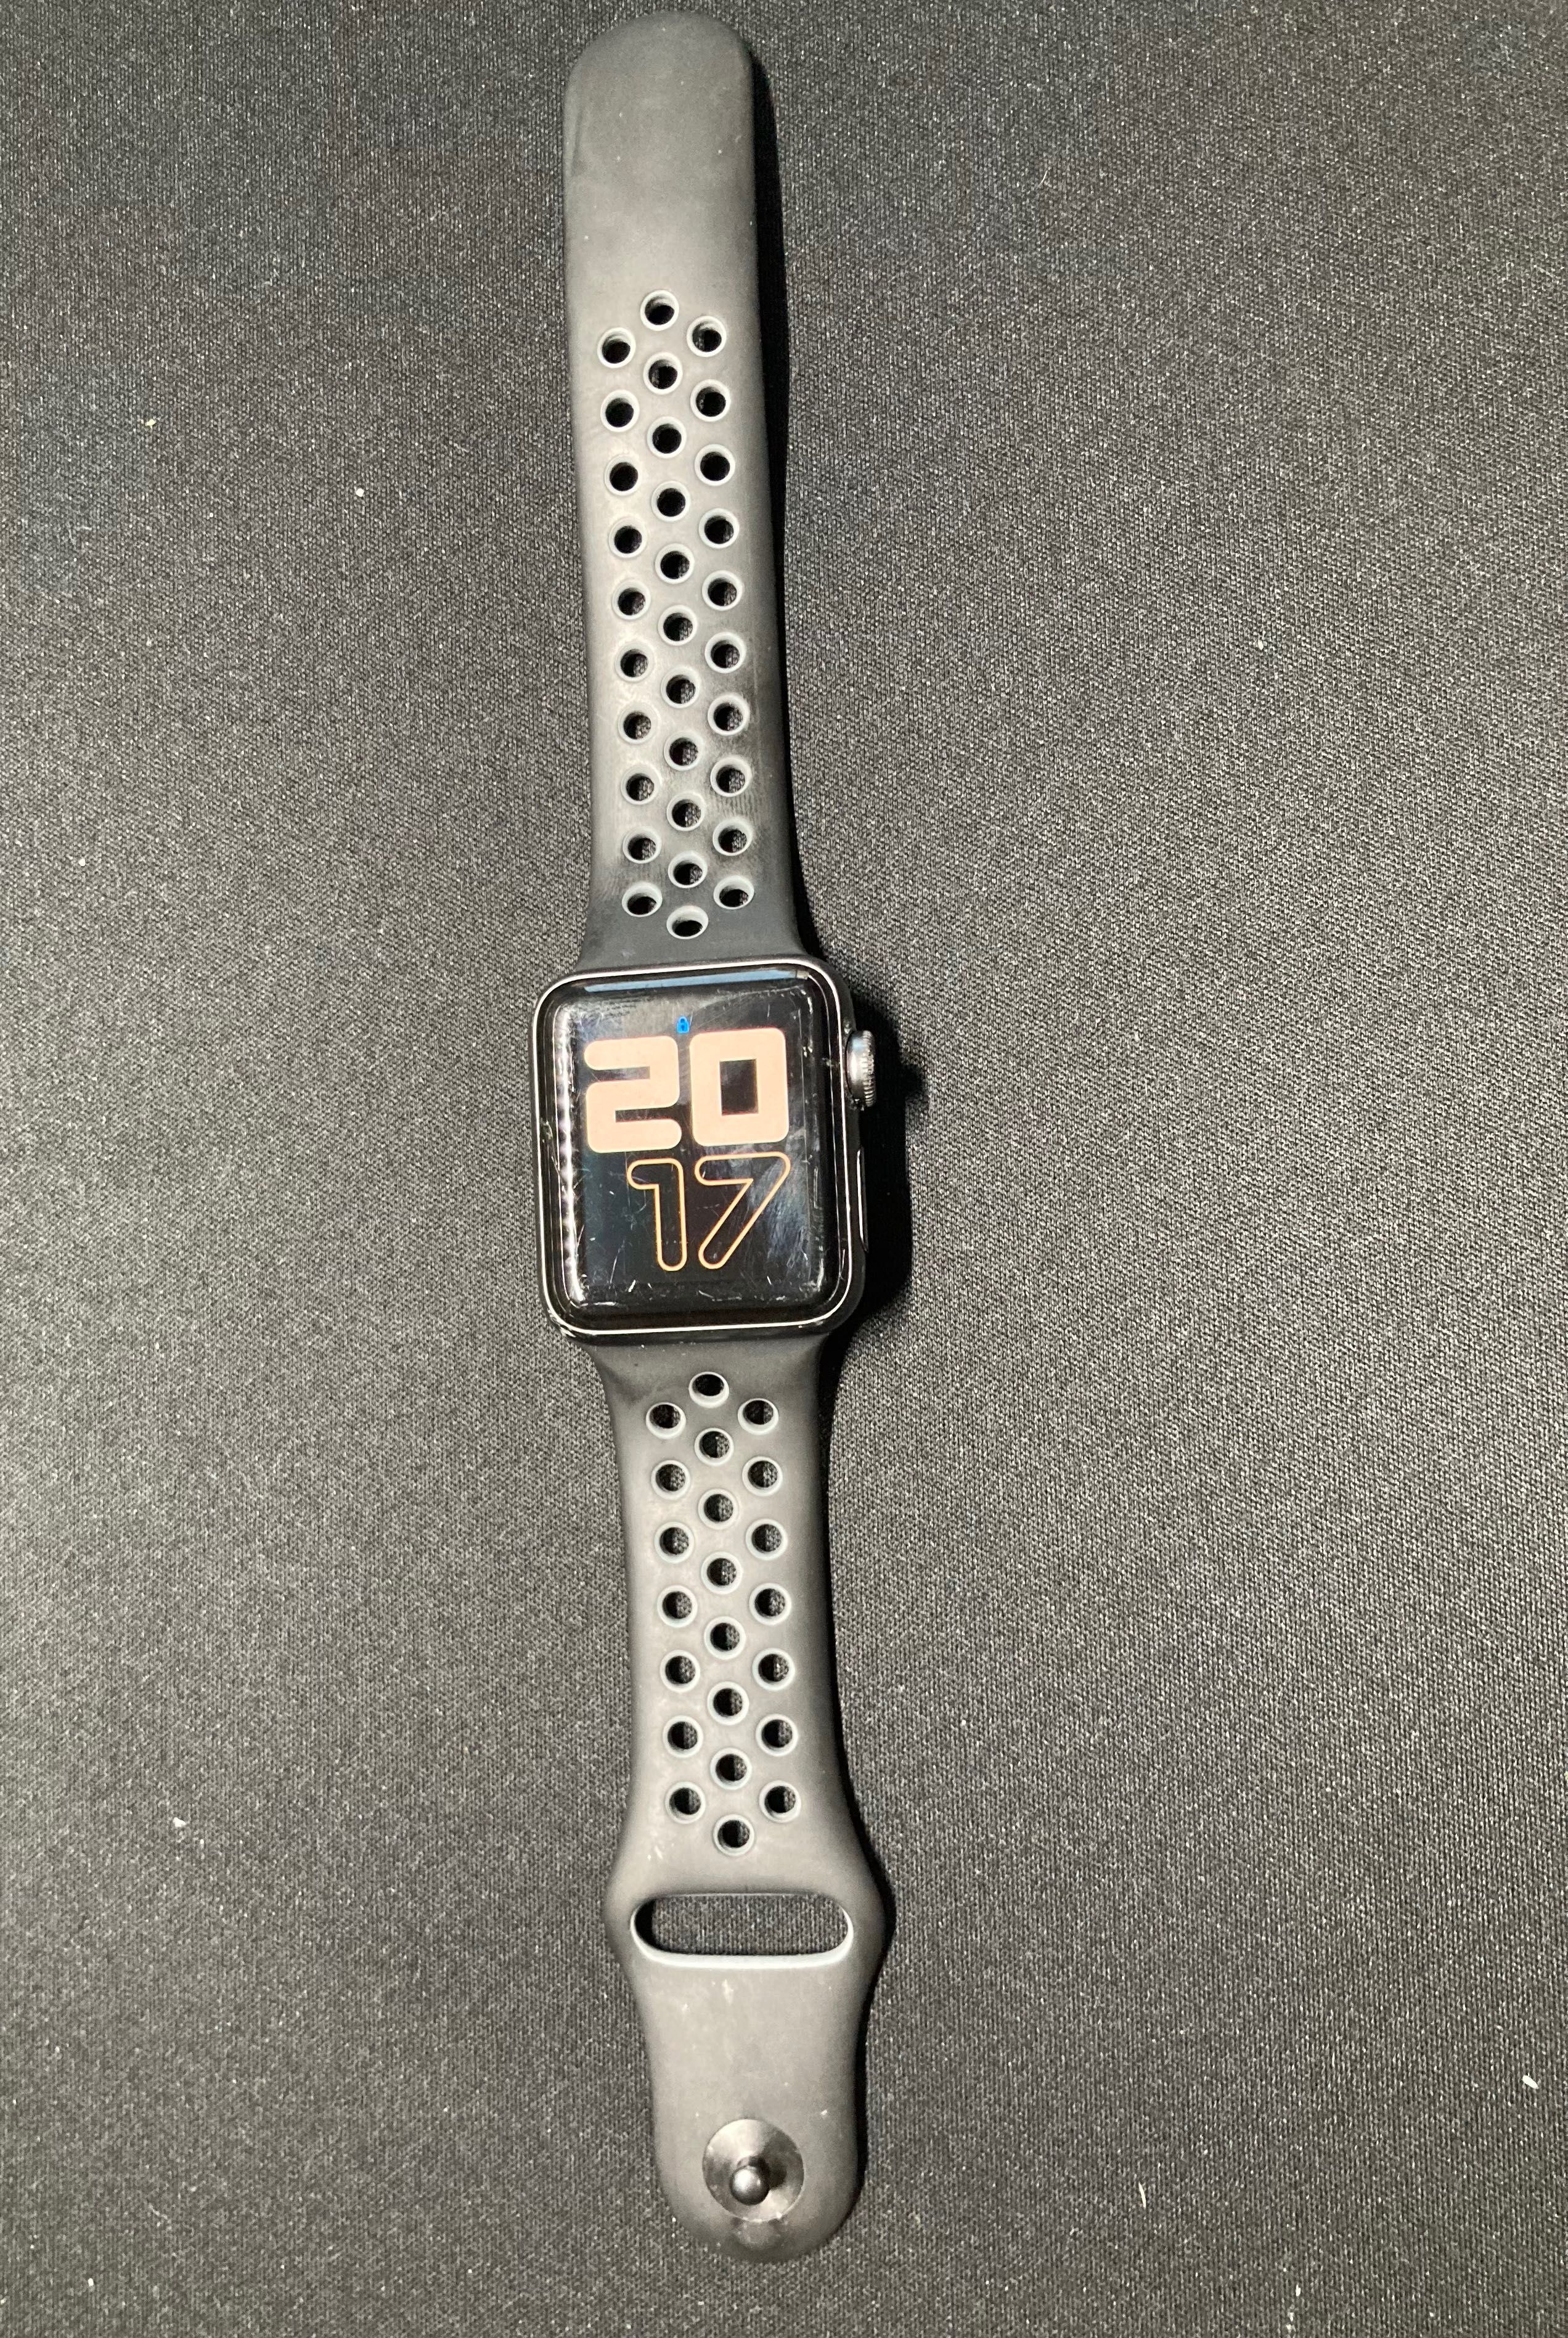 Apple Watch (Series 2) Caixa 38mm em Alumínio Prateado